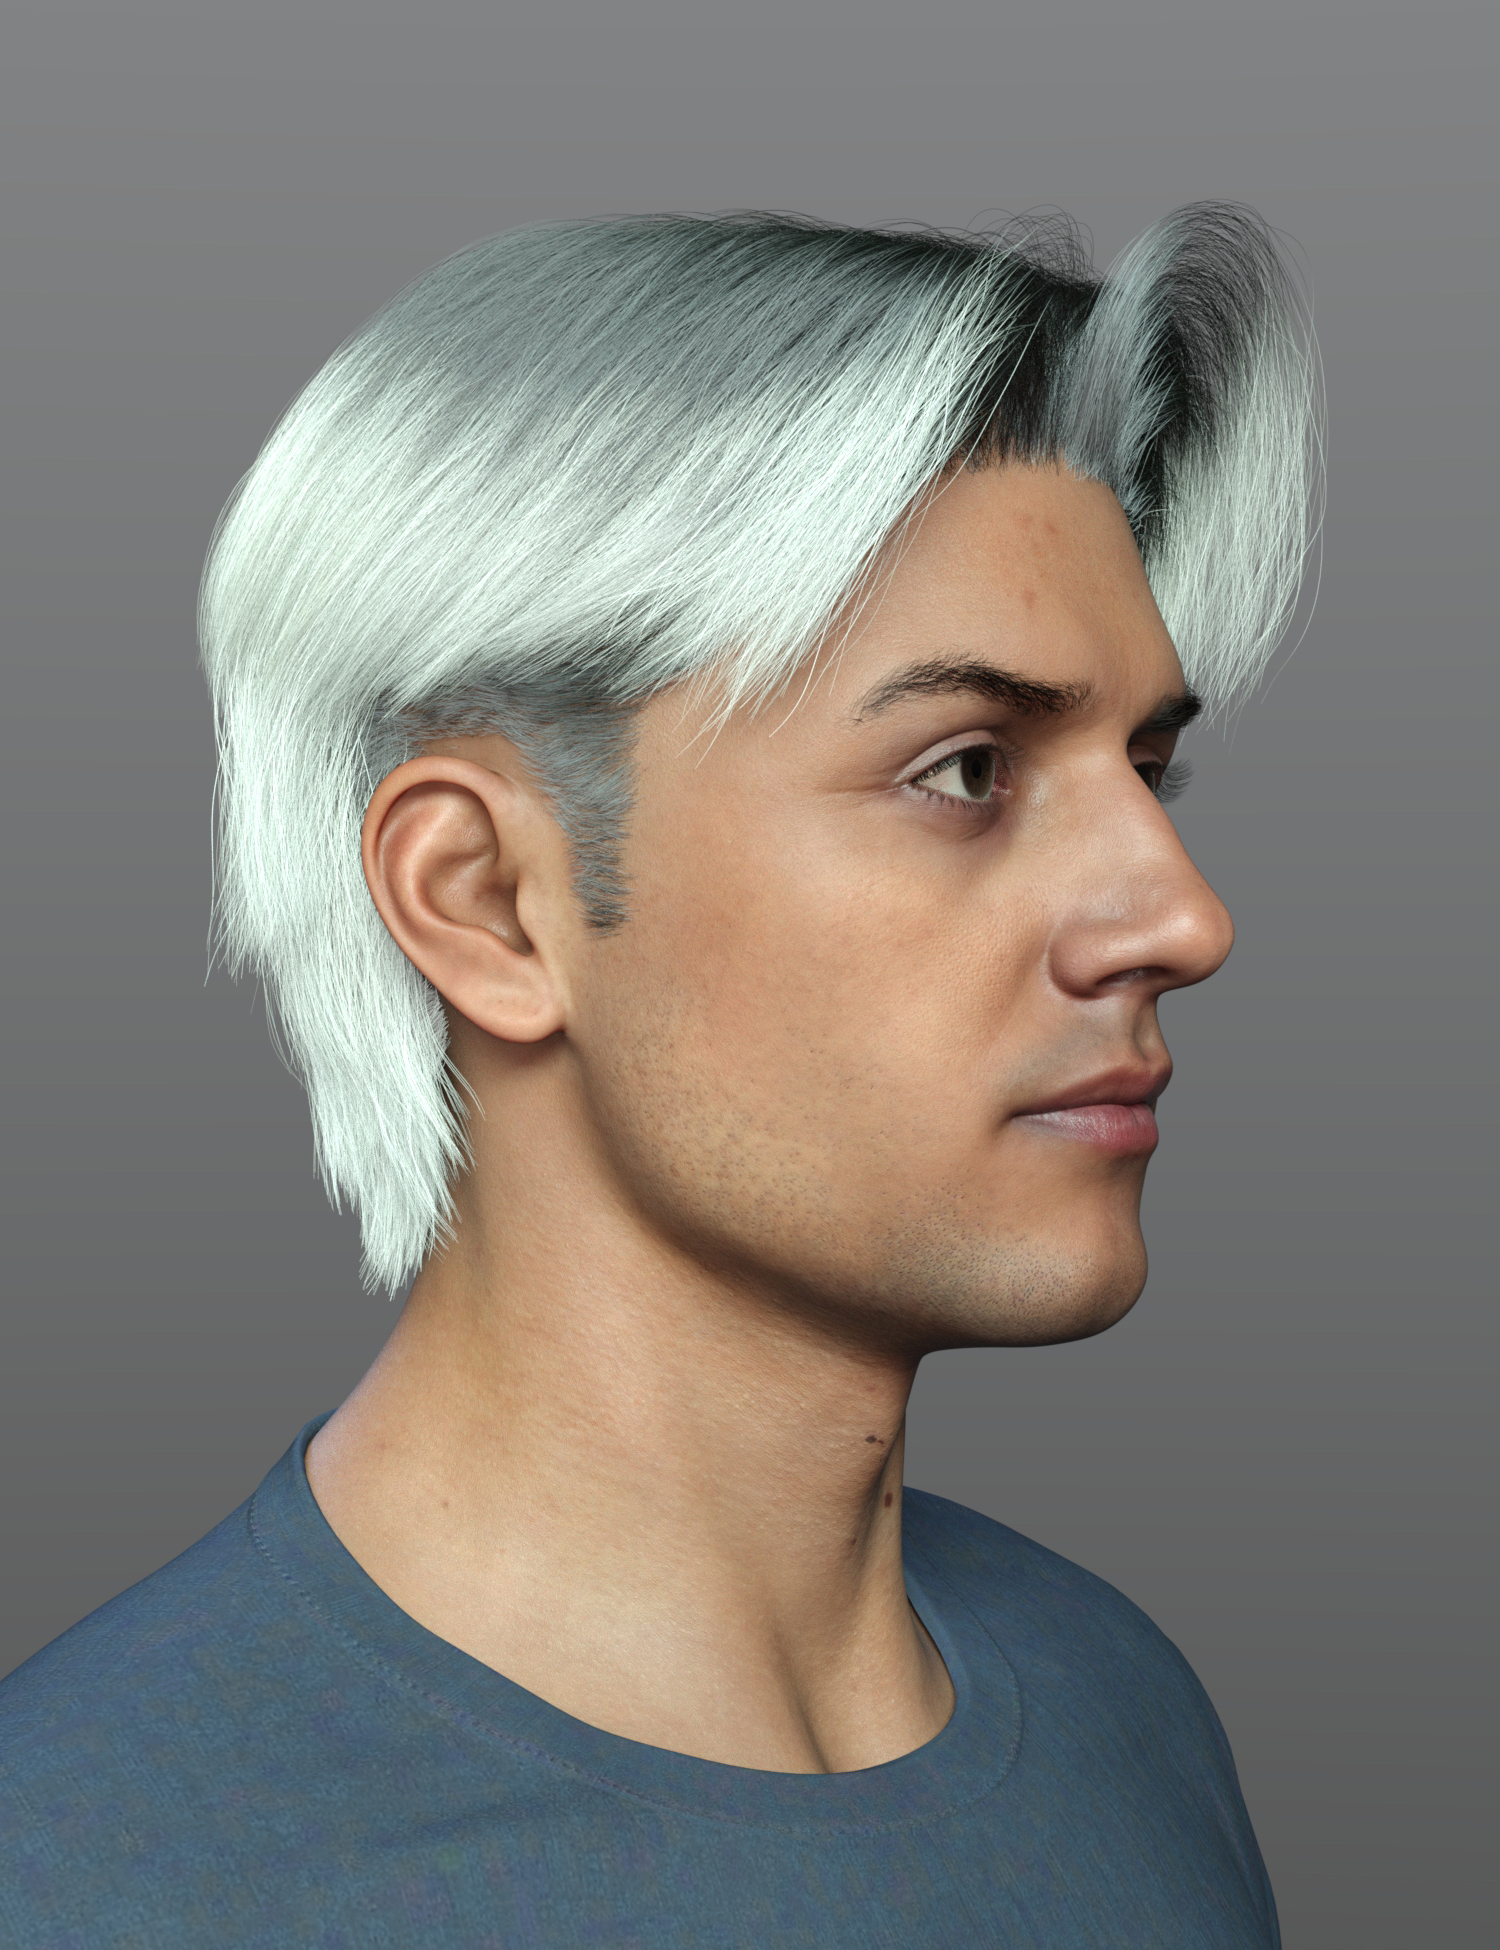 dForce SPR Mid Split Hair for Genesis 9 by: Sprite, 3D Models by Daz 3D